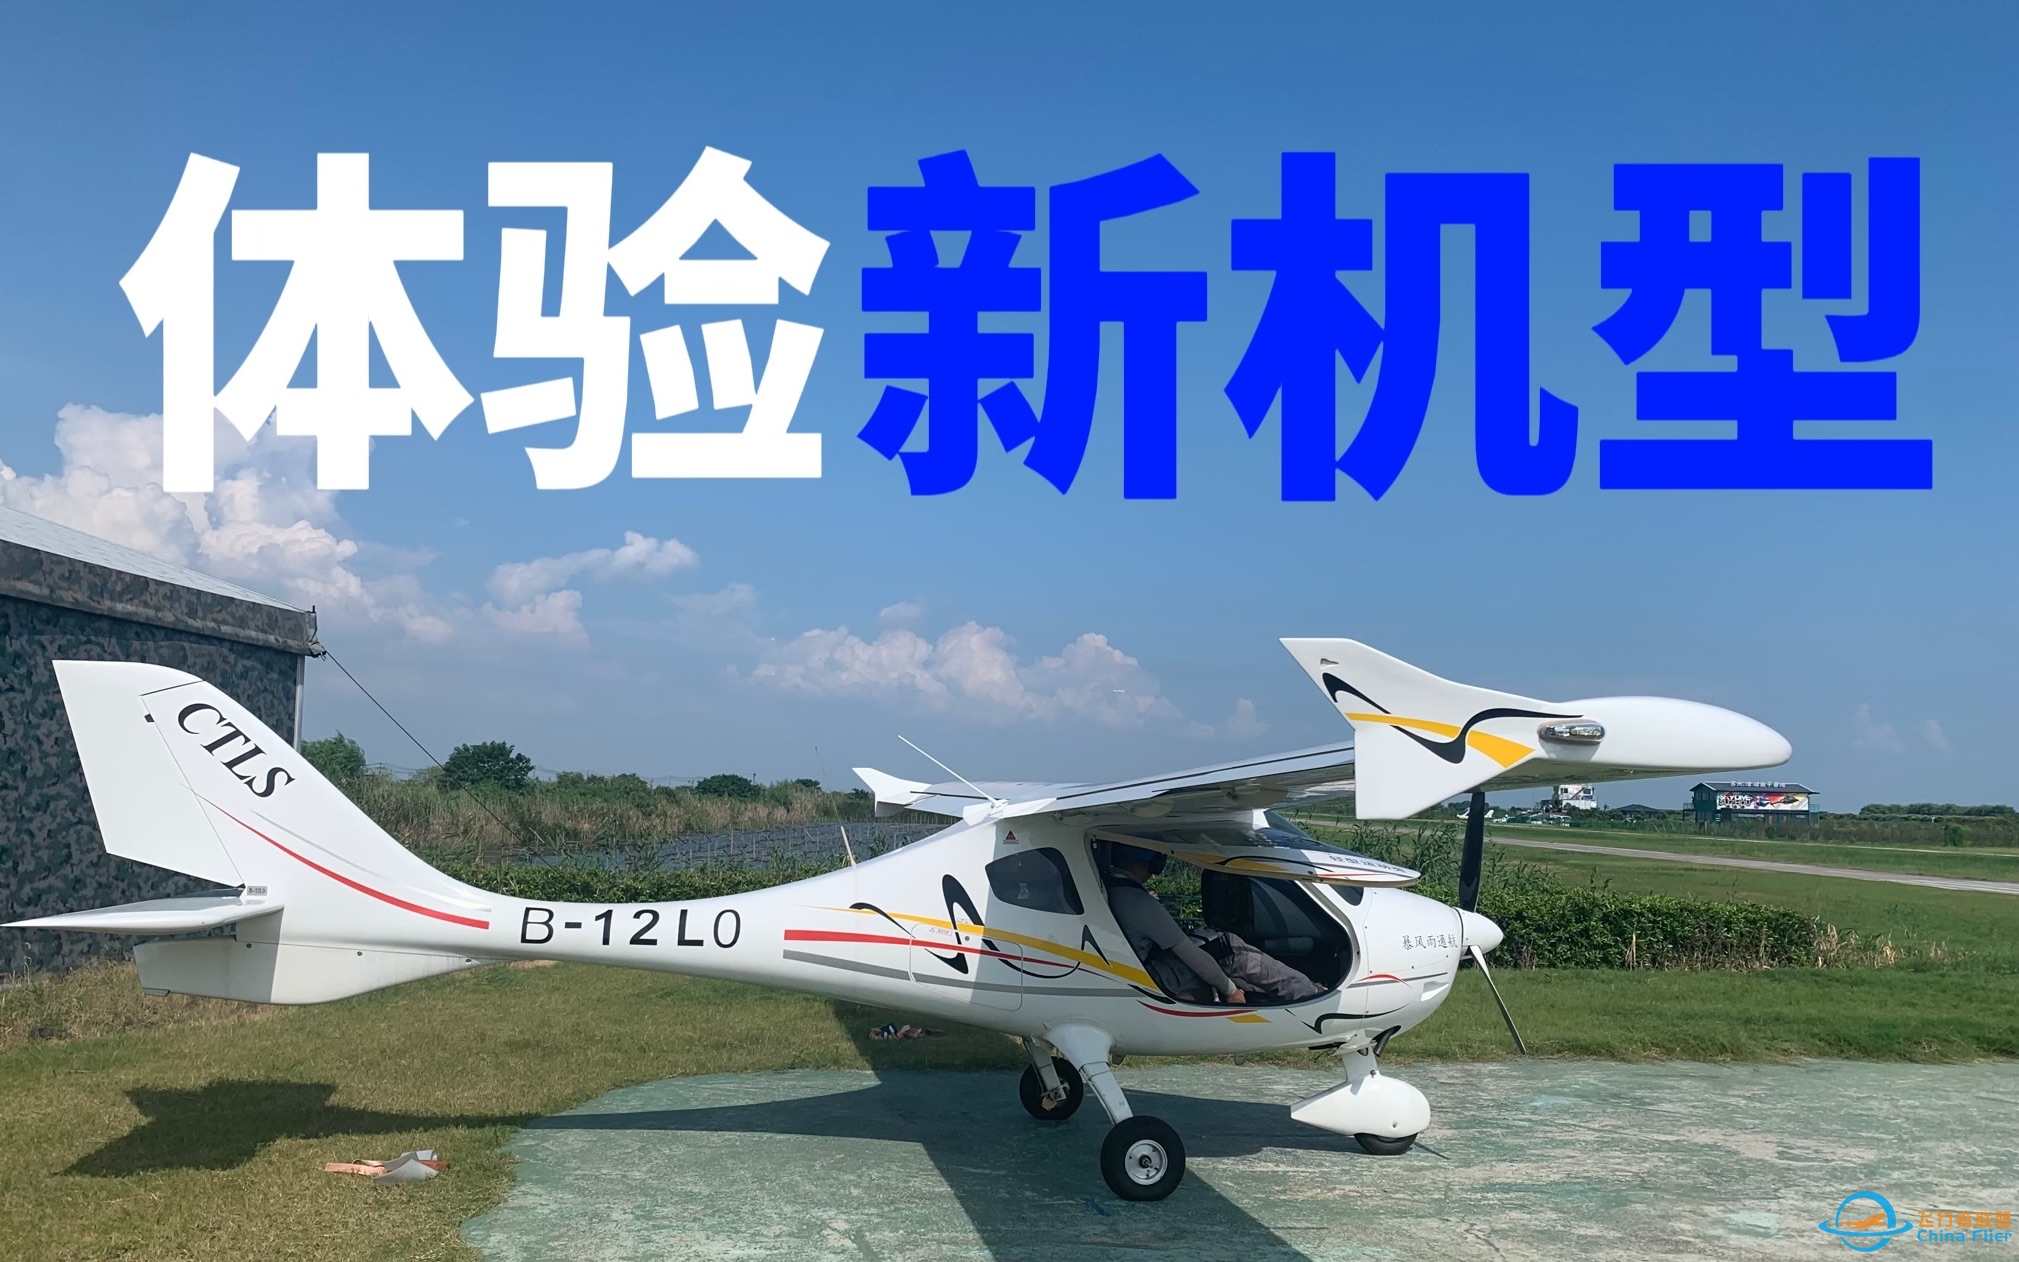 【体验飞行】初中生飞友首次体验驾驶CTLS飞机｜新的机型新的挑战-1417 